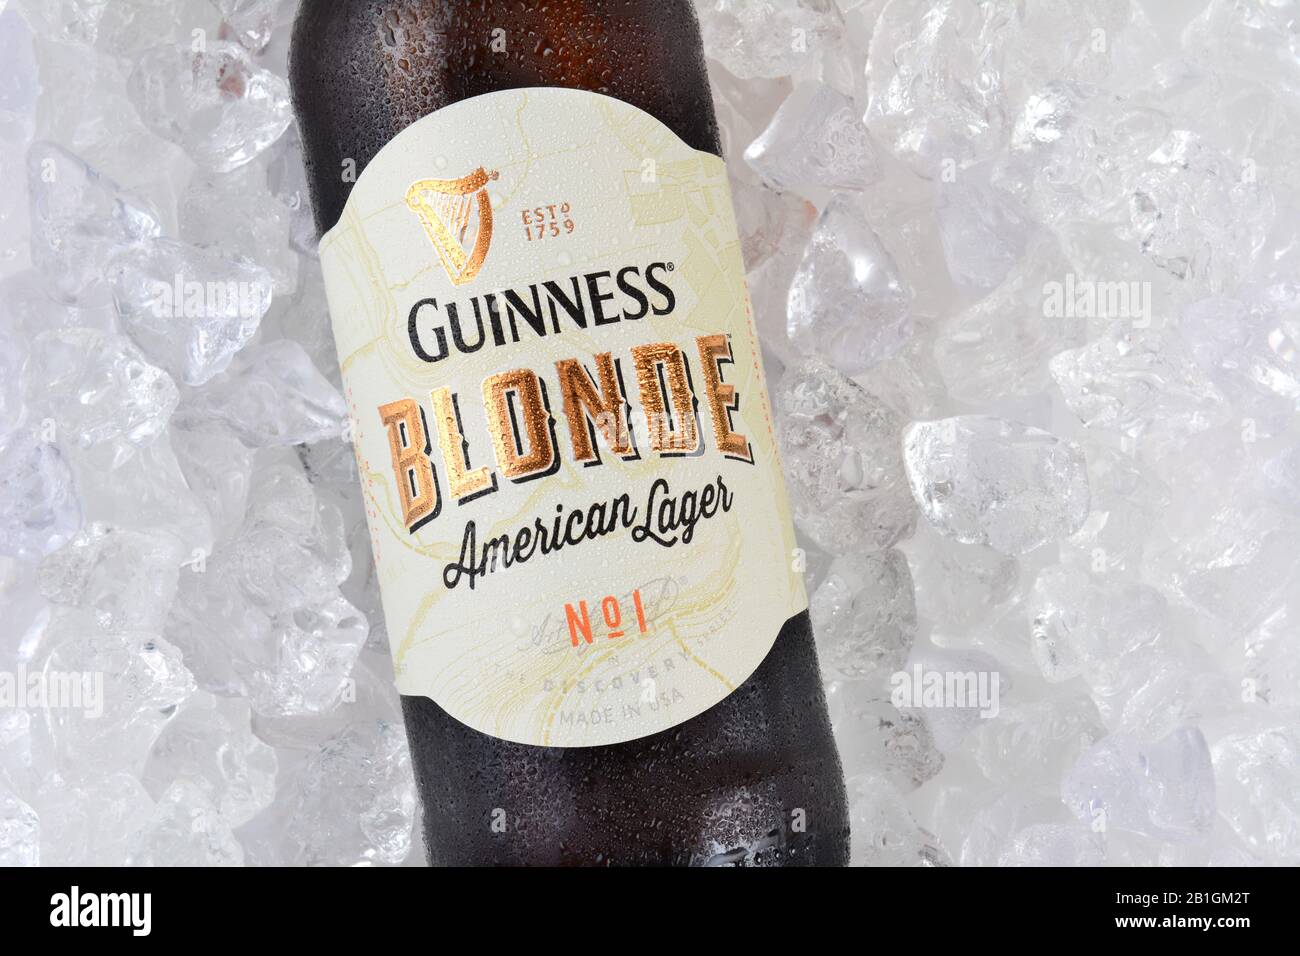 Irvine, CA - 12 GENNAIO 2015: Una bottiglia di Guinness Blonde American Lager su un letto di ghiaccio. Guinness produce birra in Irlanda dal 1759. Foto Stock